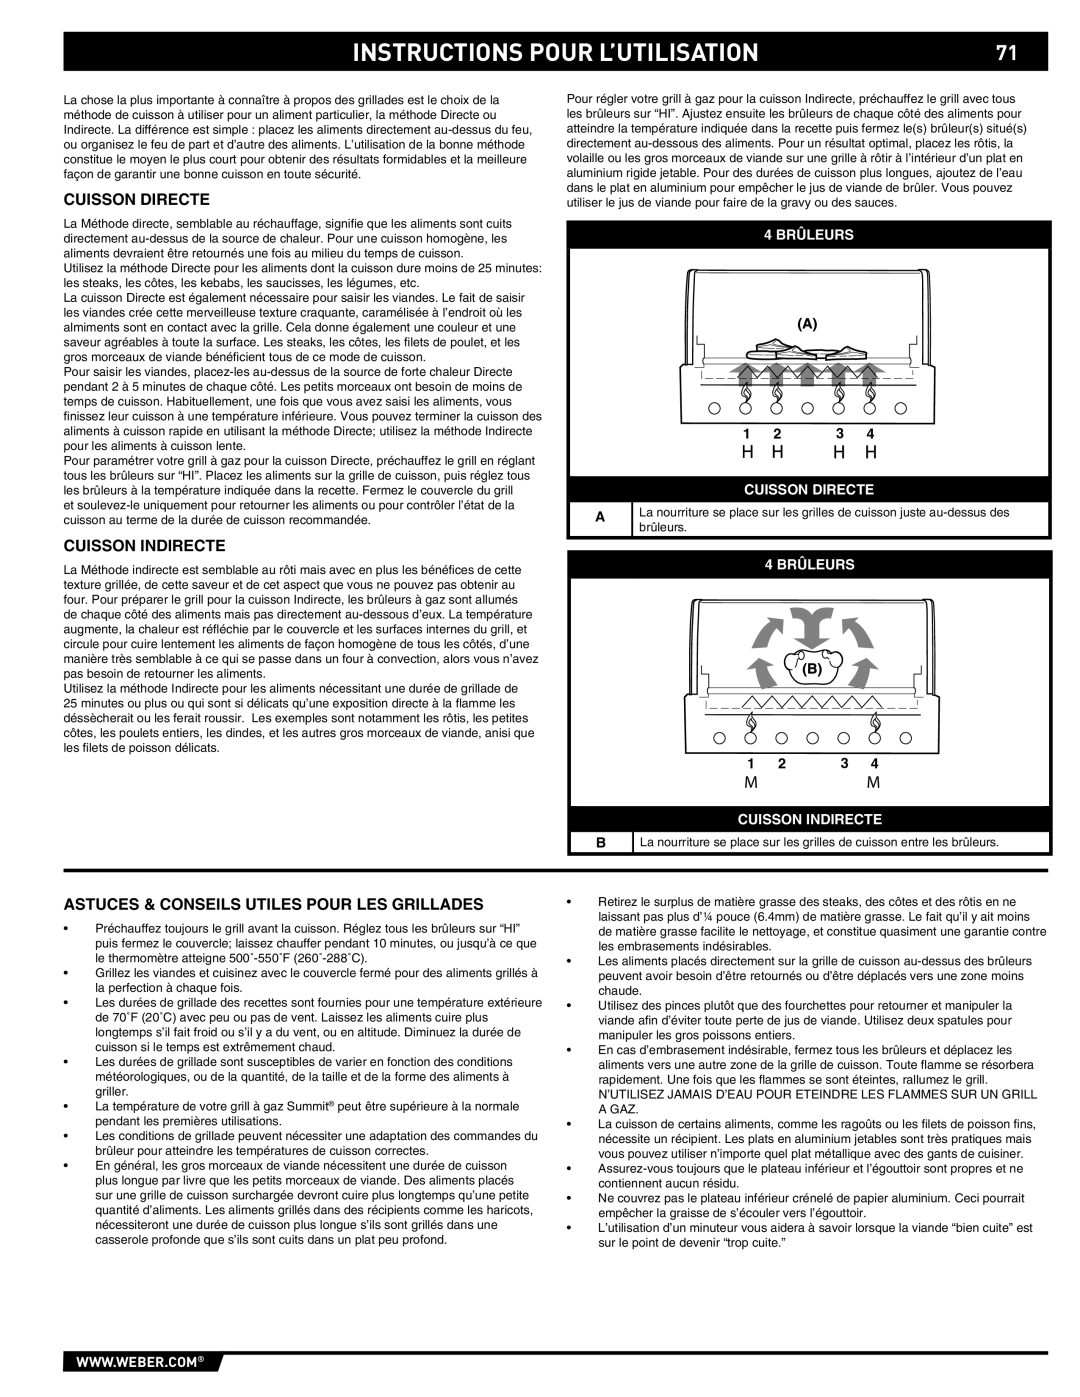 Summit 89190 manual Instructions Pour L’Utilisation, 4 BRÛLEURS, Cuisson Directe, Cuisson Indirecte 